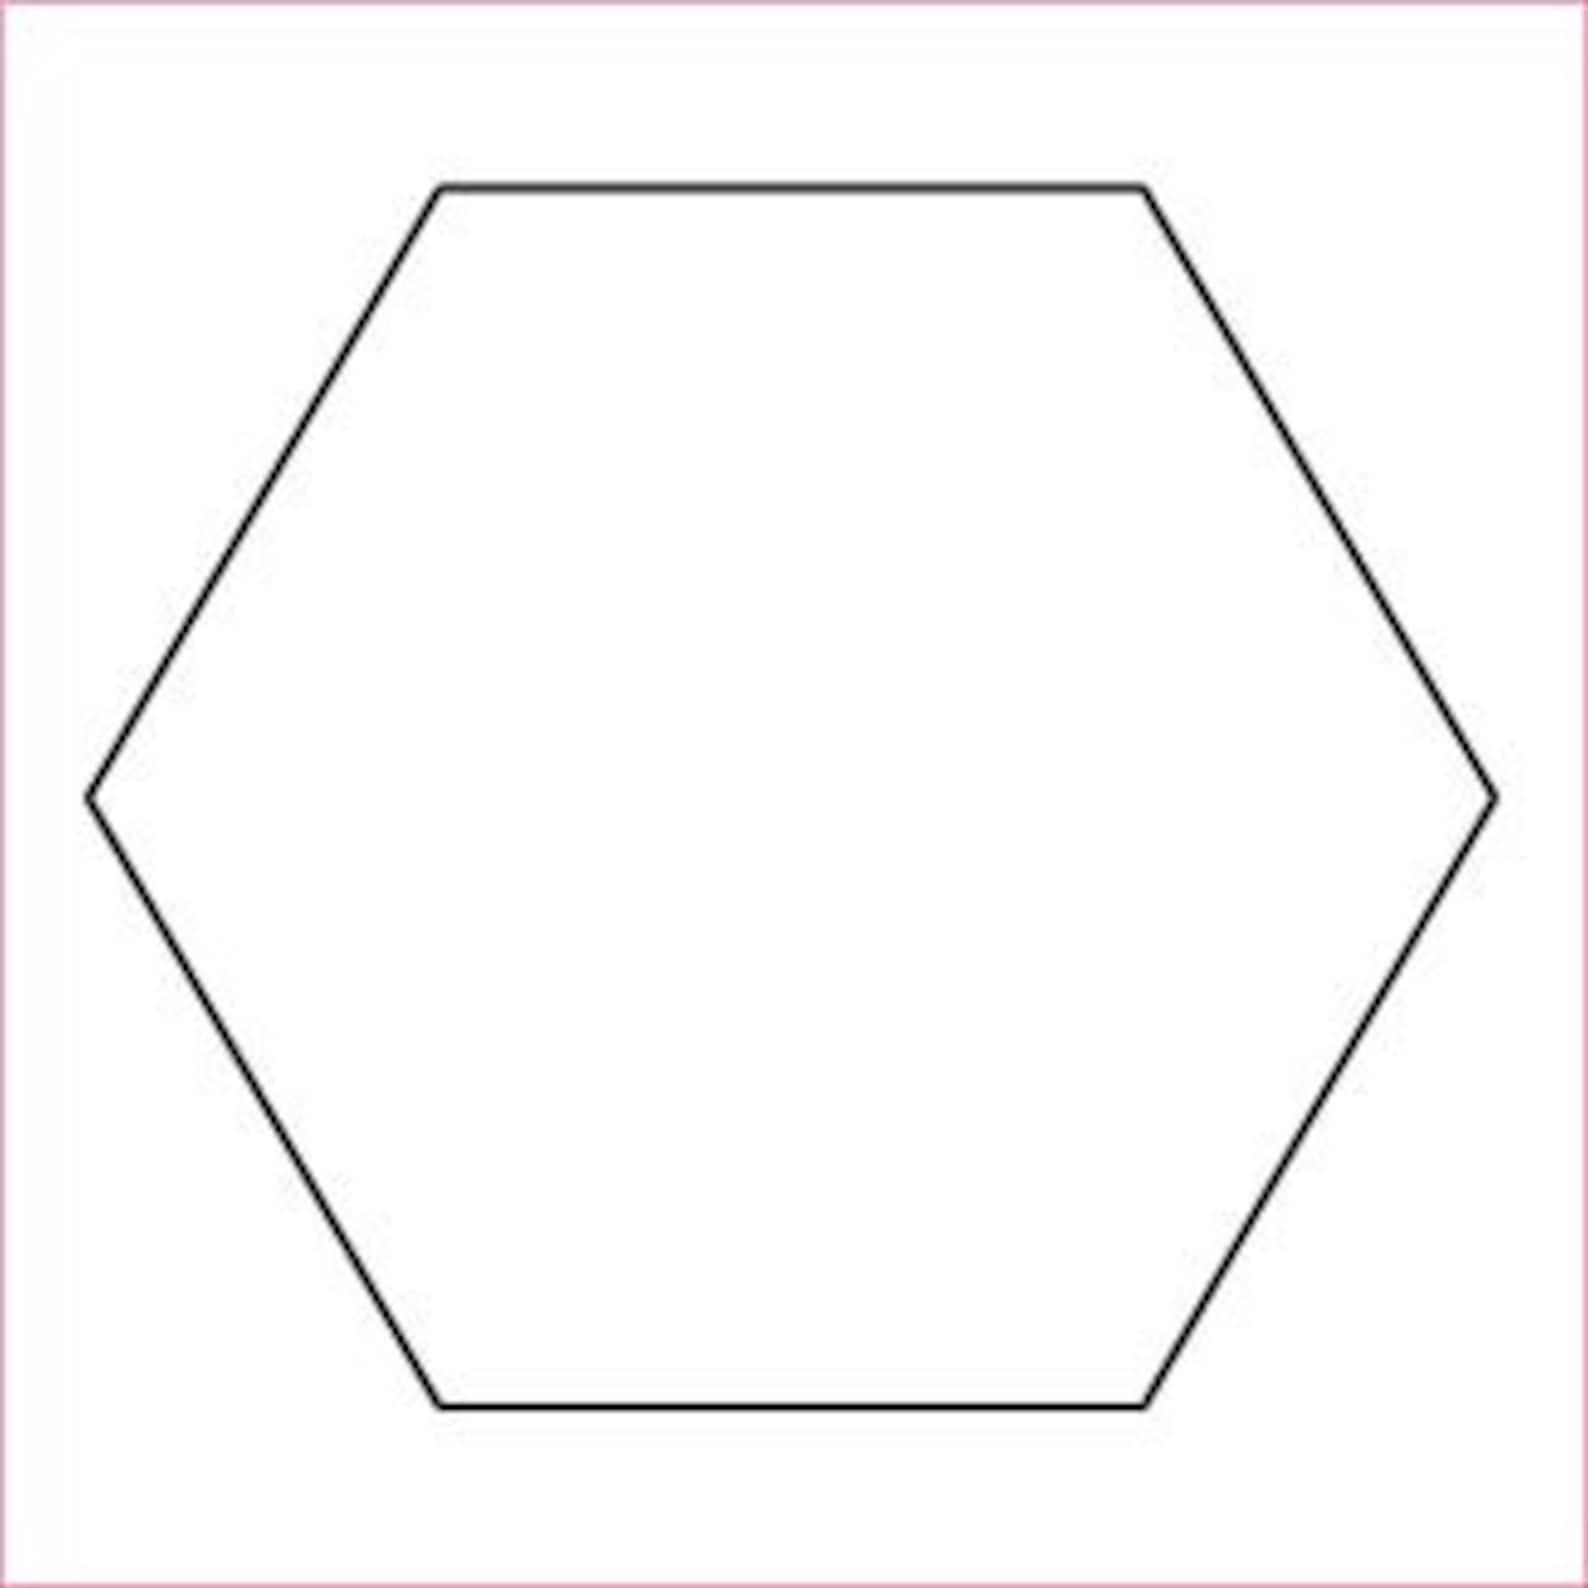 Правильный шестиугольник фигура